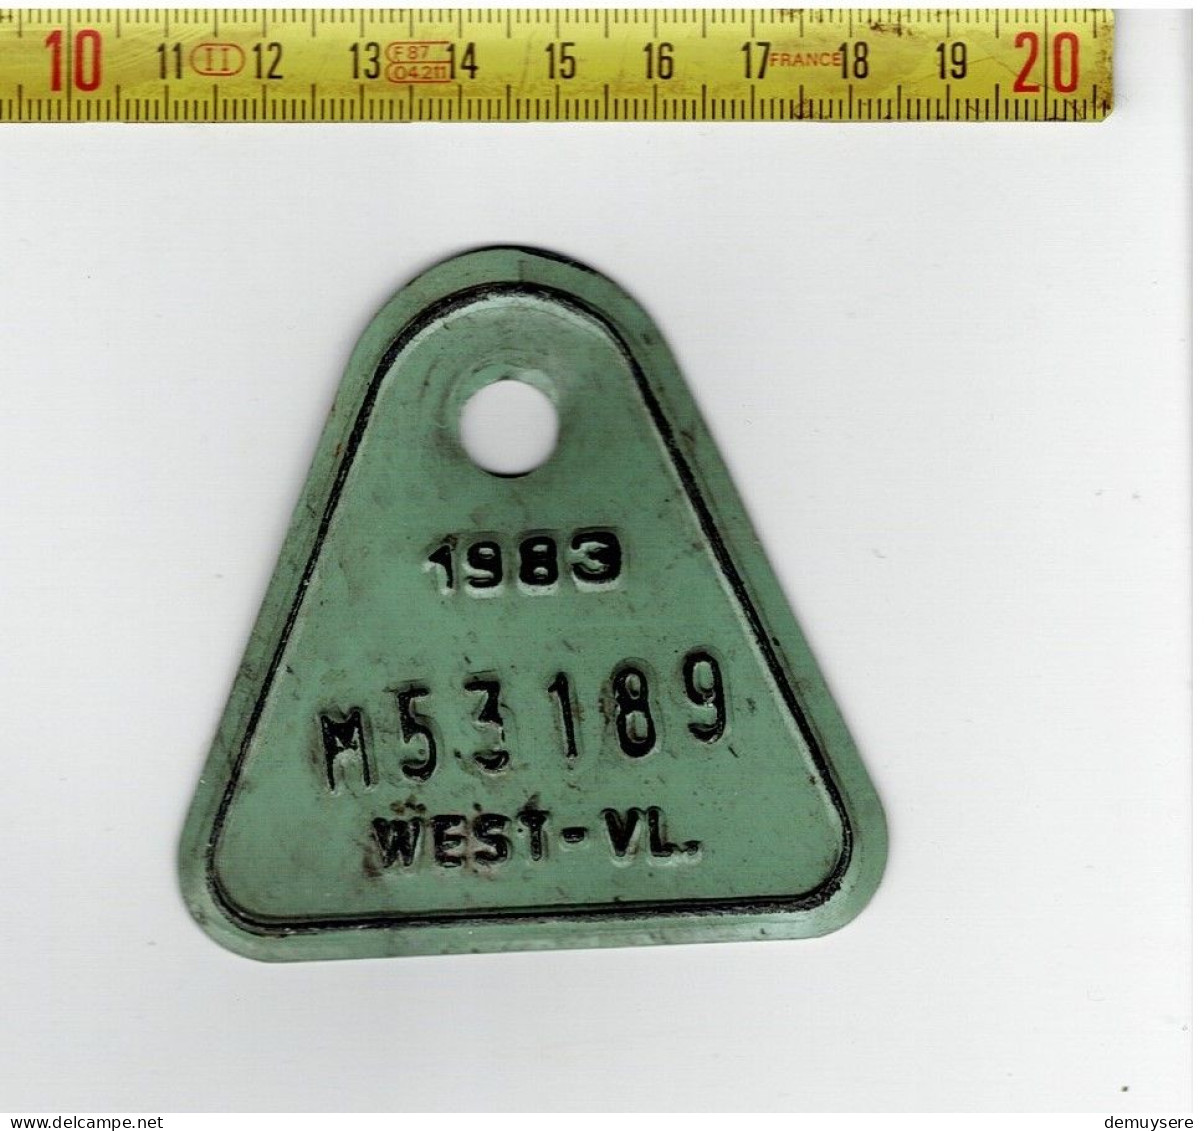 LADE D - FIETSPLAAT - 1983  -  WEST-VL - M53189 - Nummerplaten